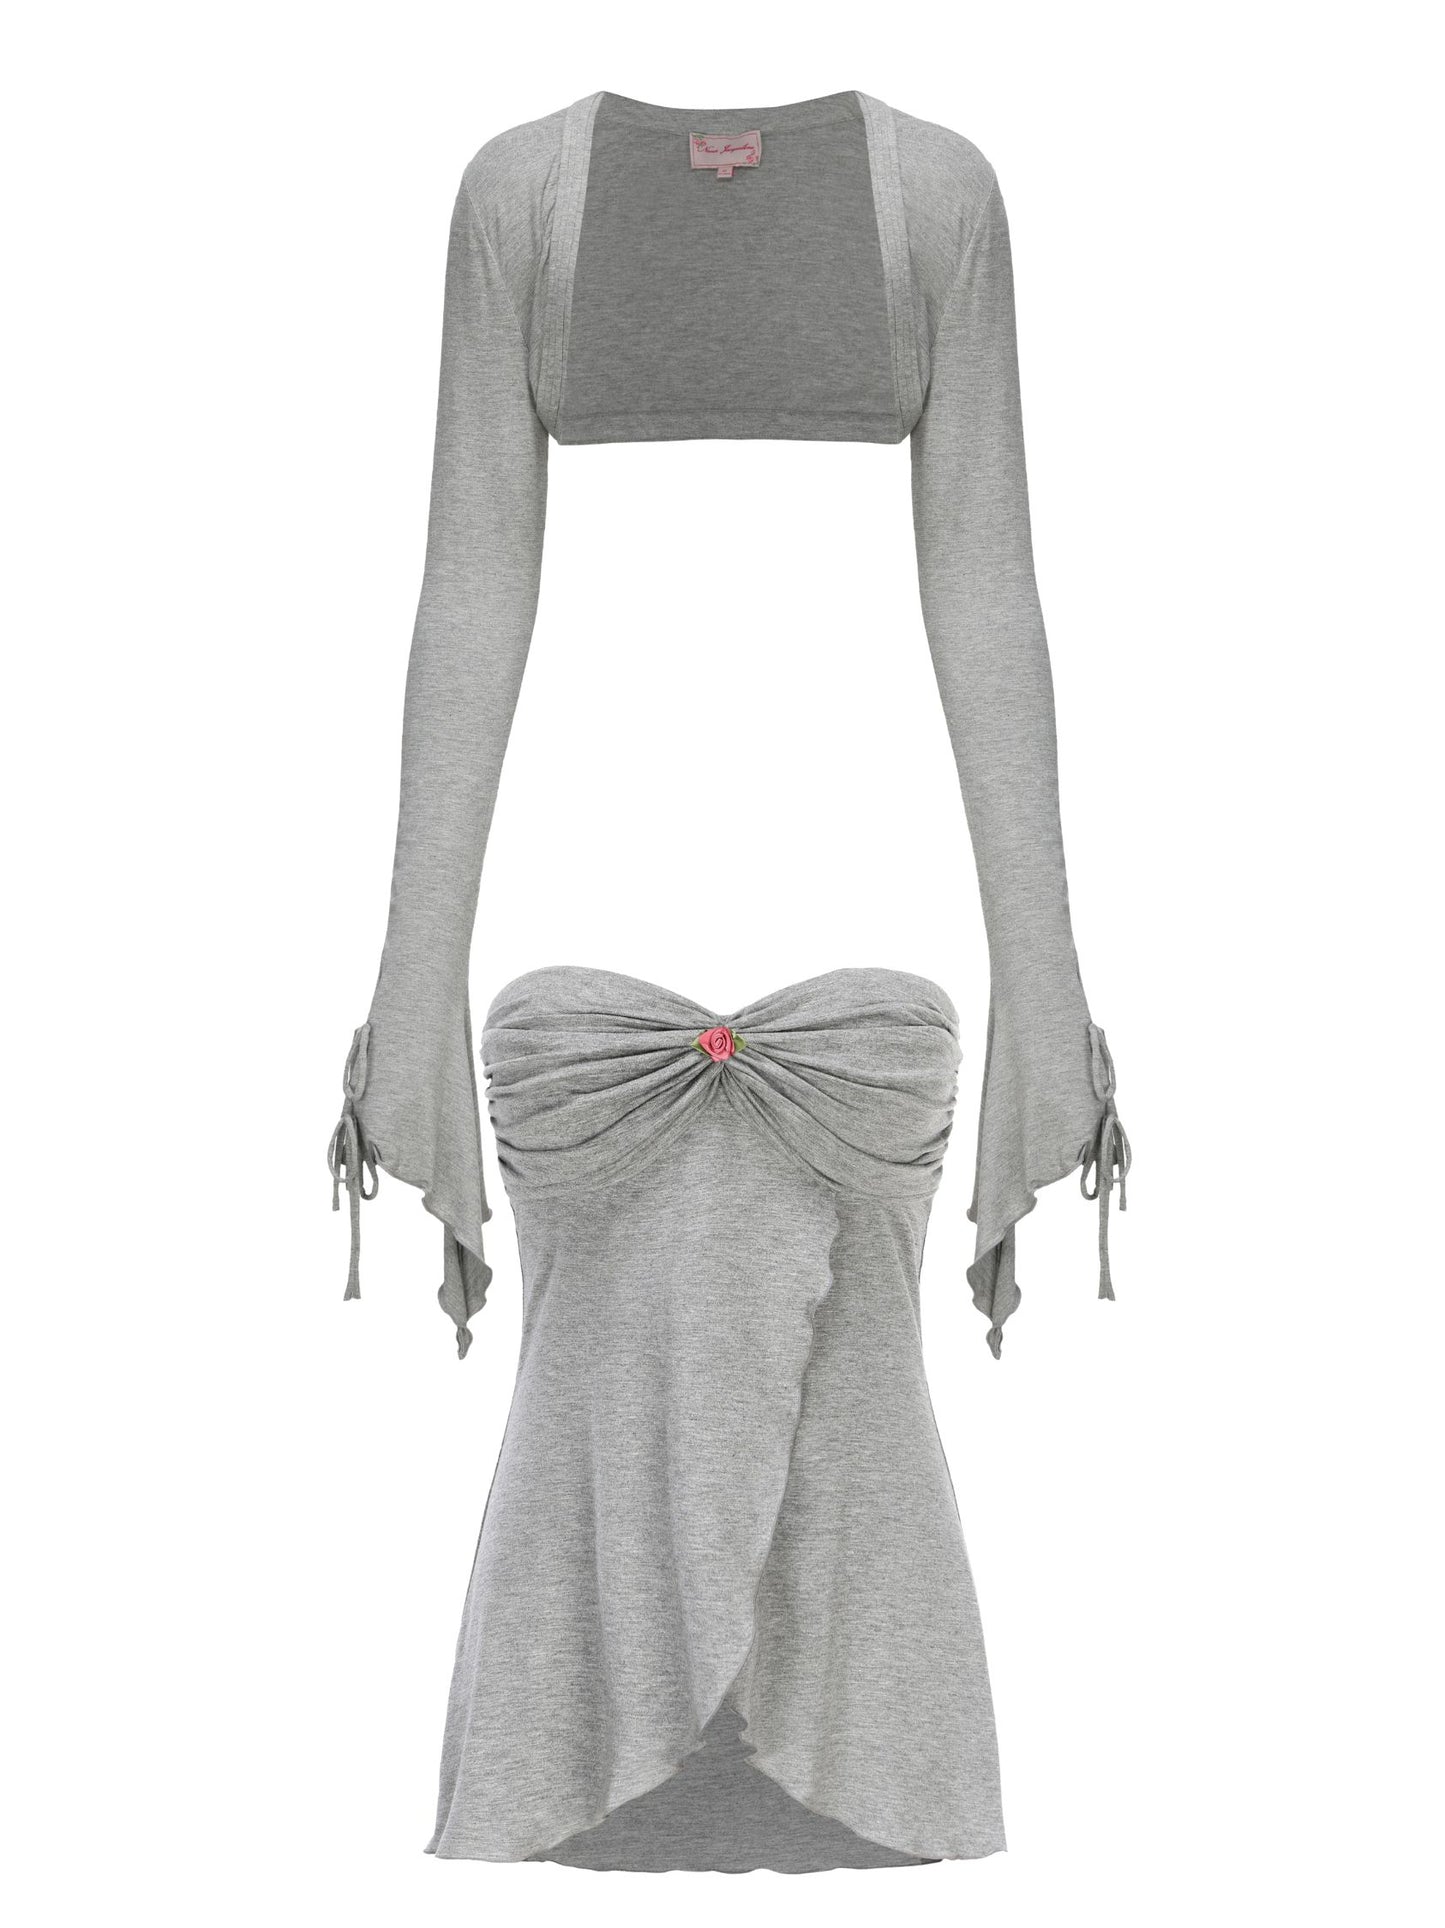 Aubrey Top + Cardigan Set (Grey)